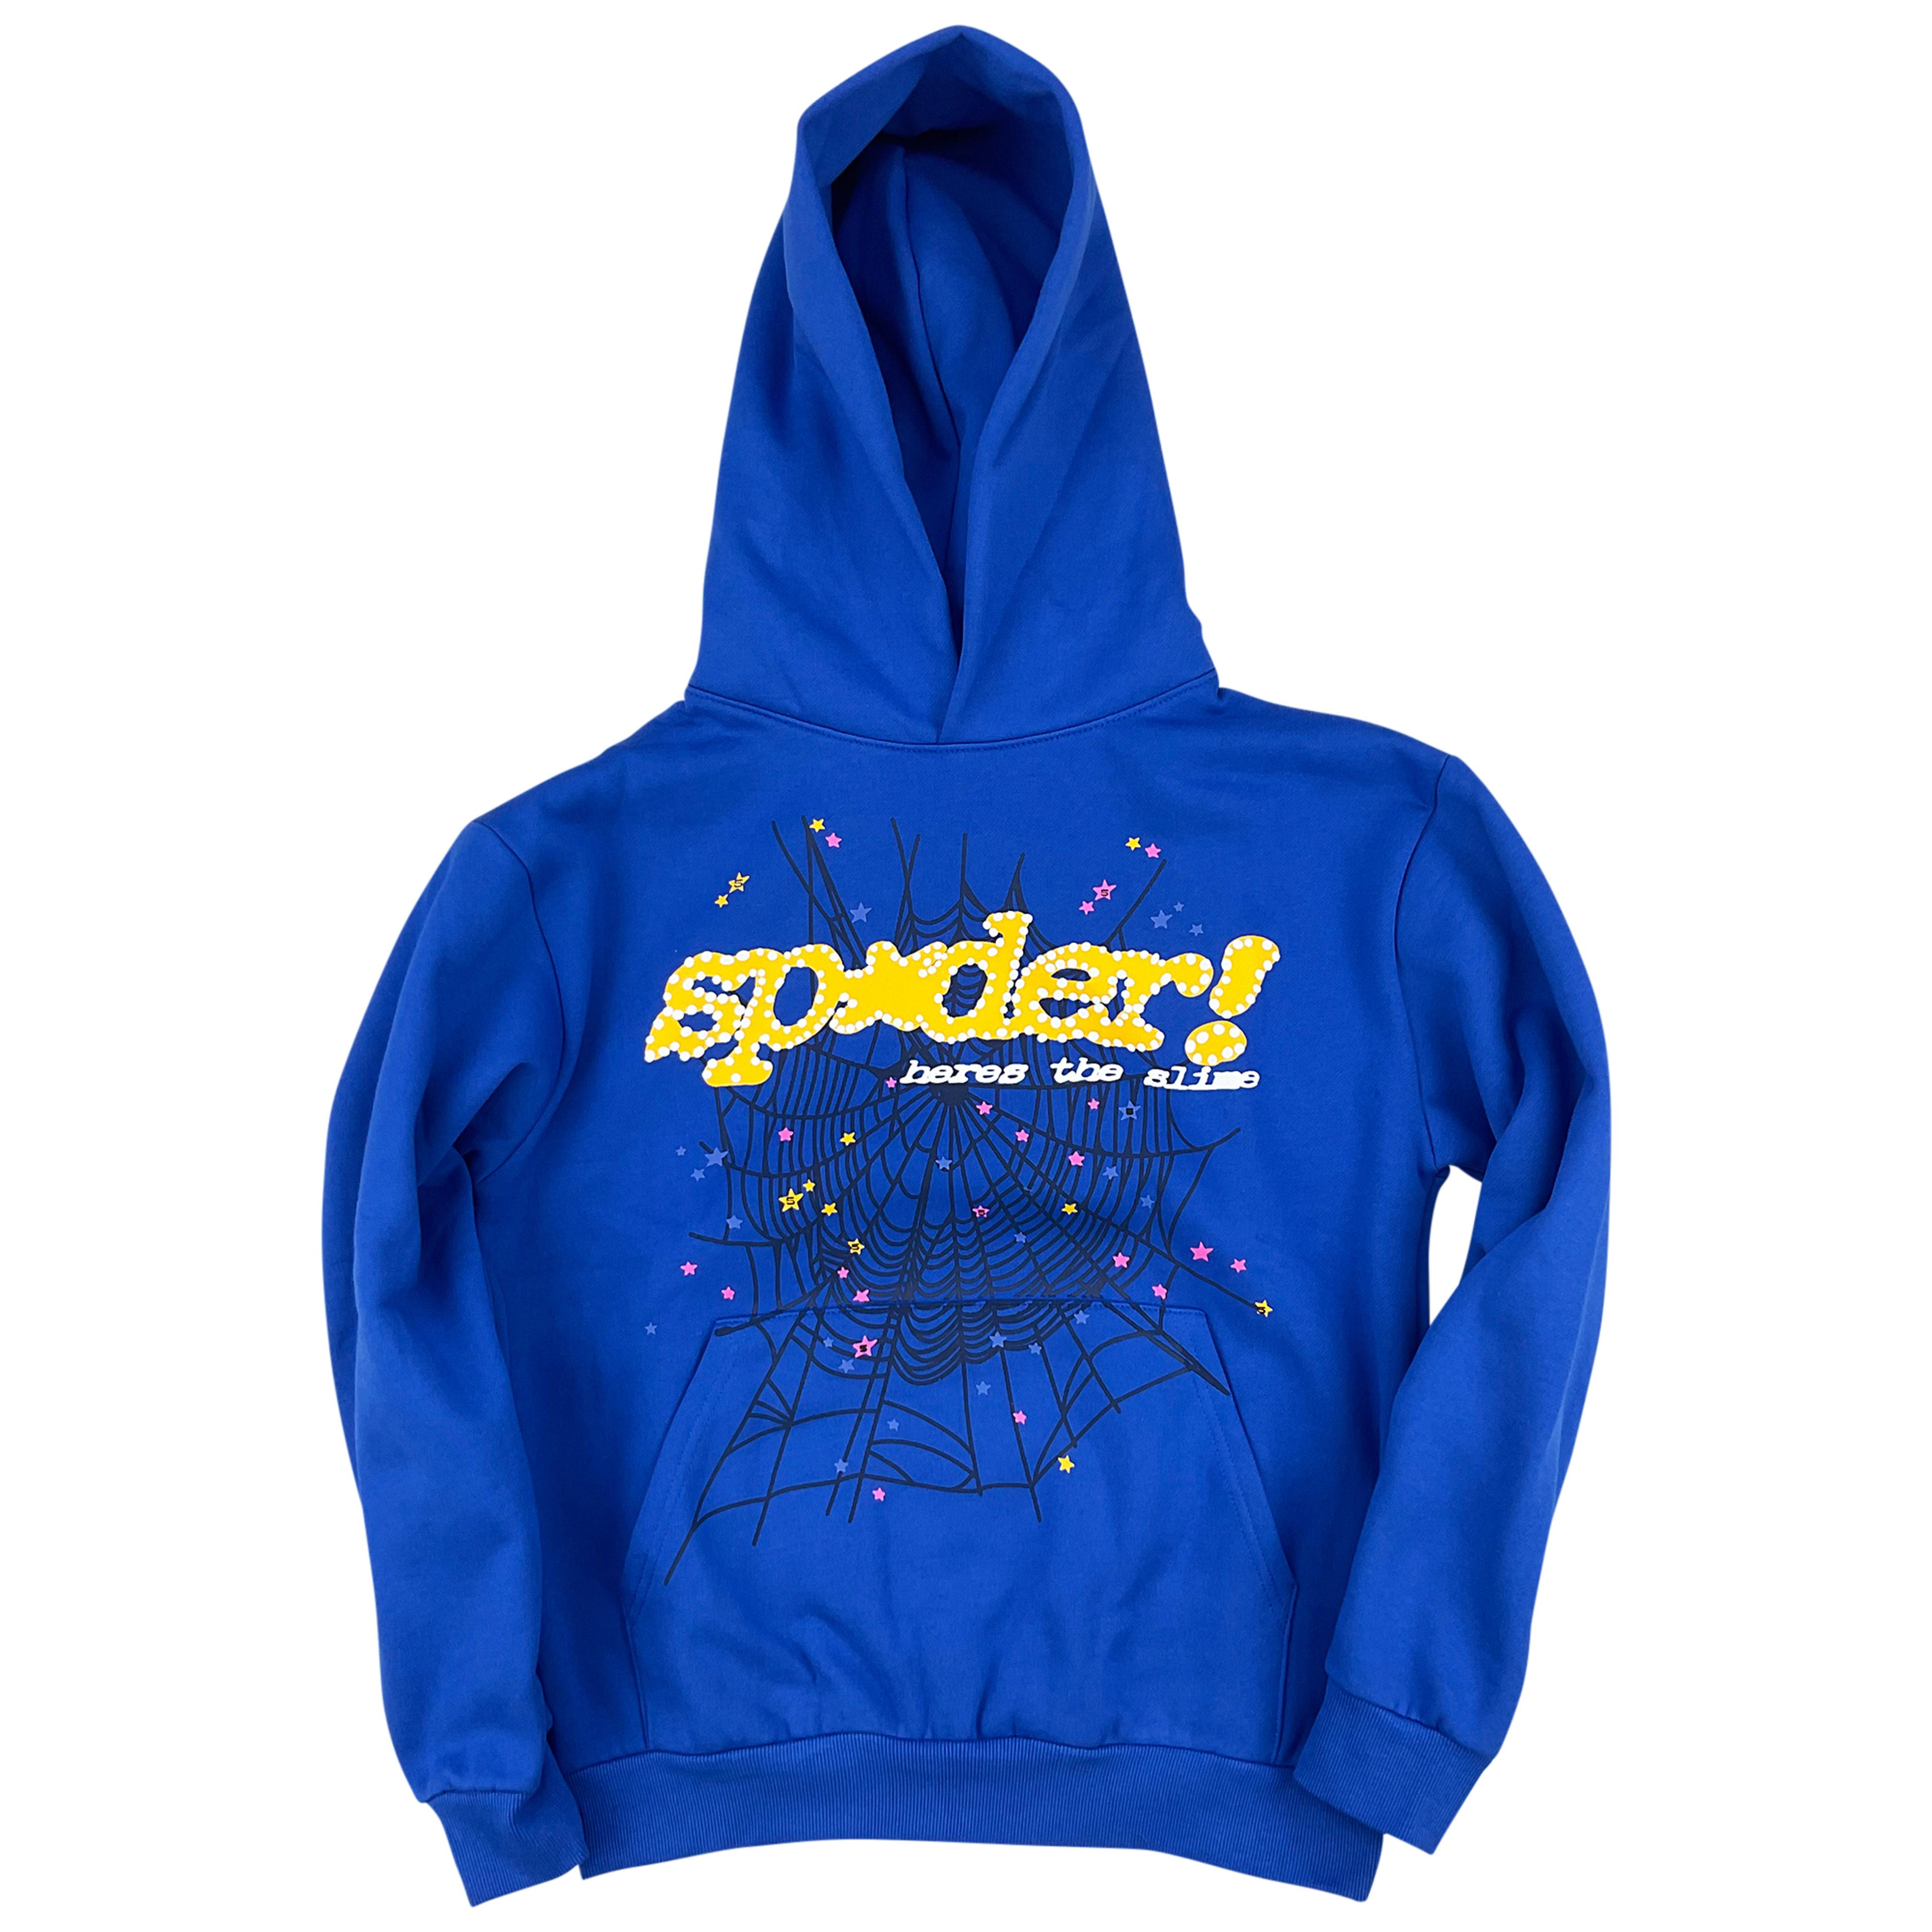 Sp5der TC Marina Blue Hoodie Sweatshirt | Spider Worldwide